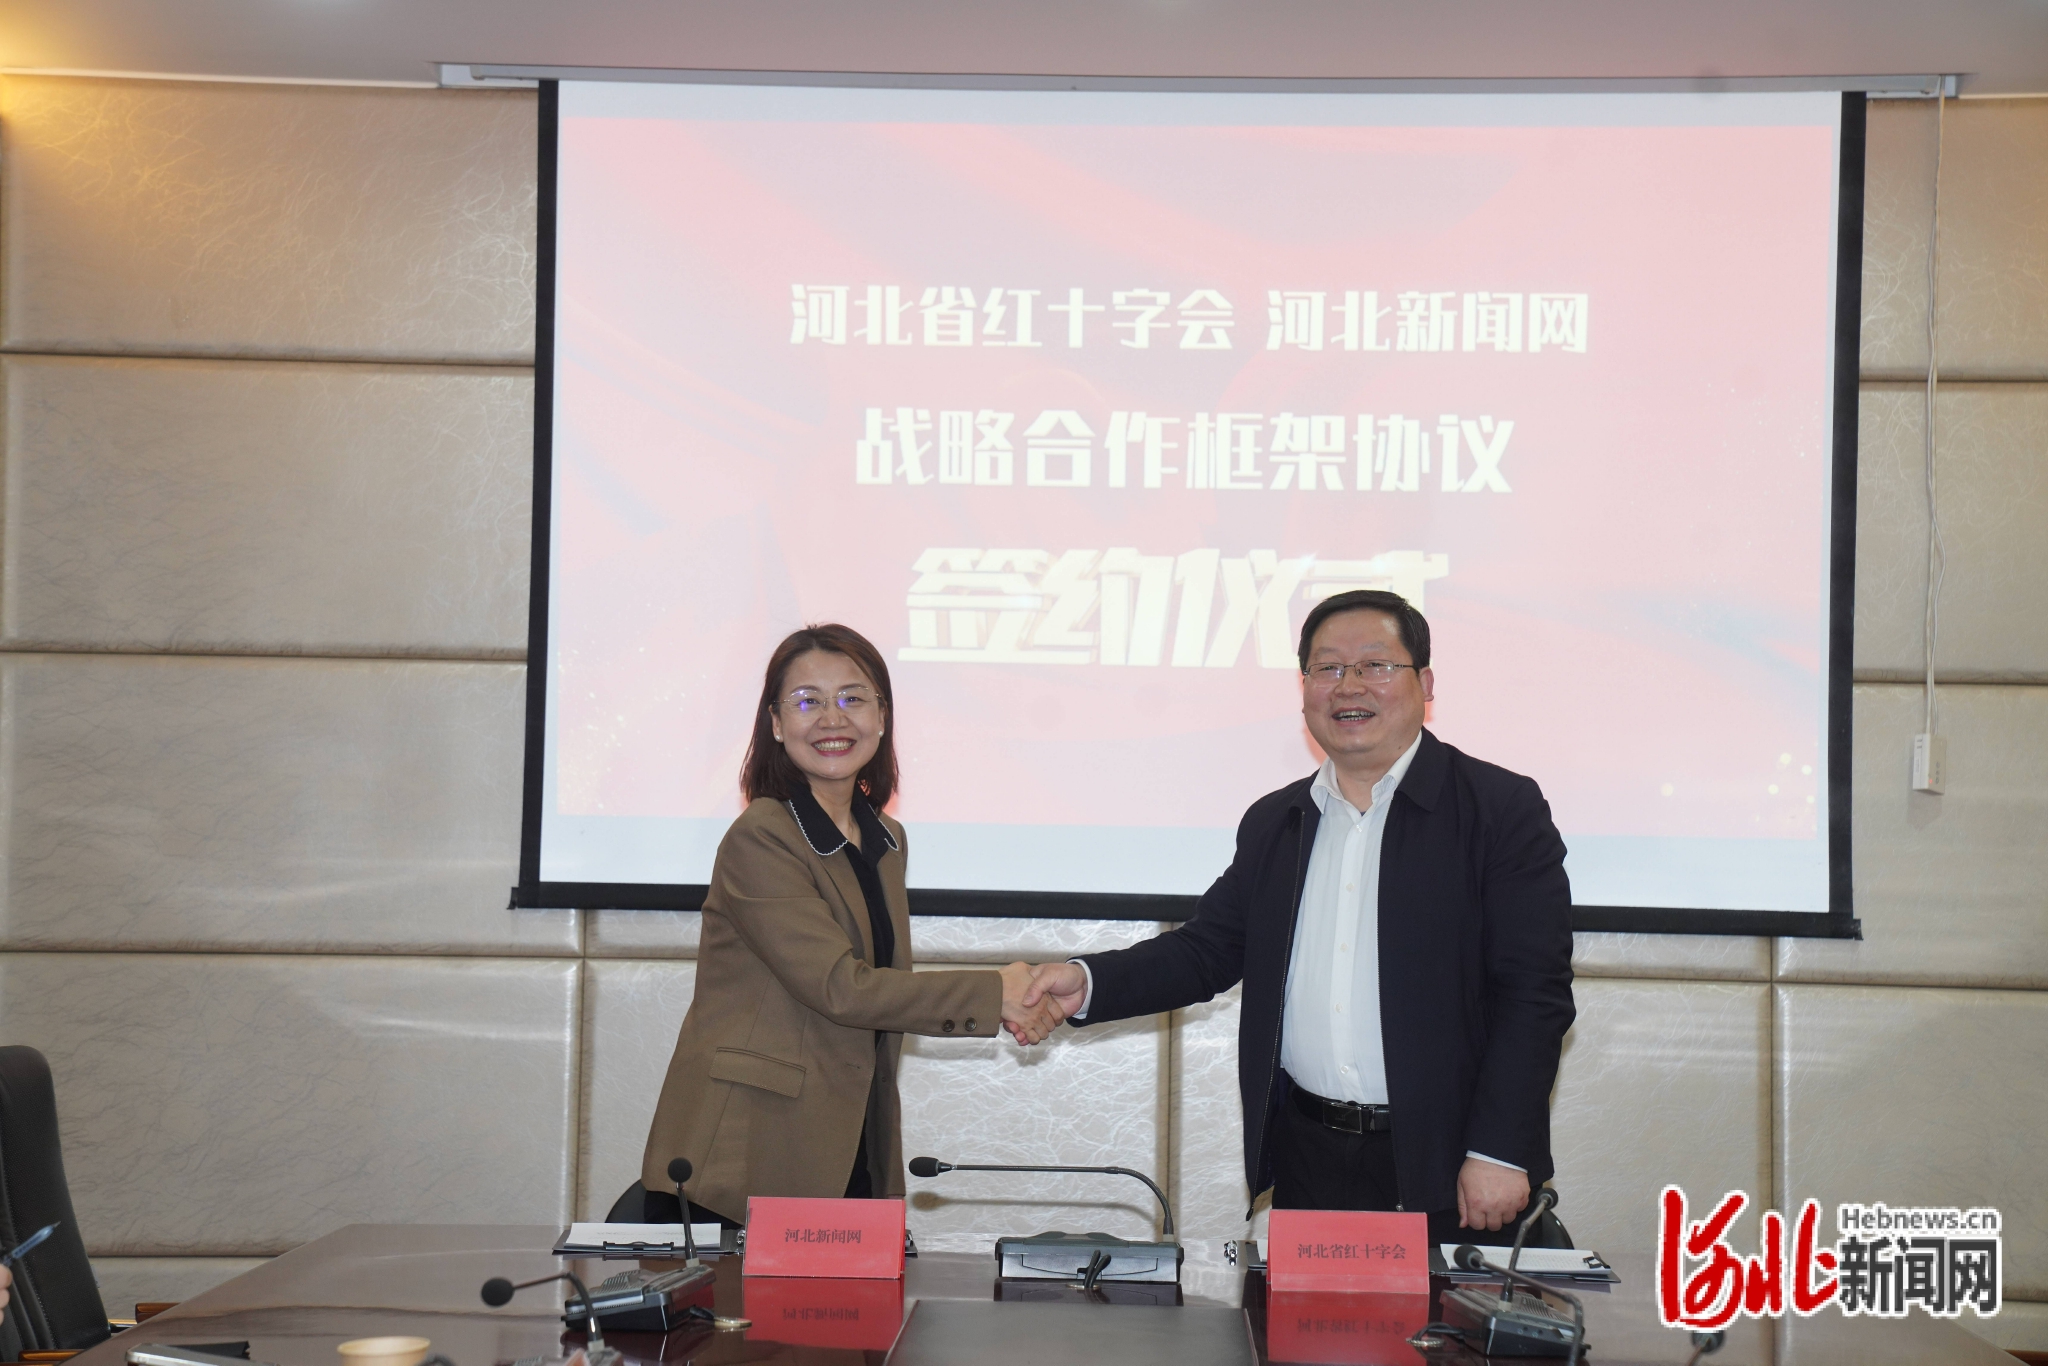 河北省红十字会、河北新闻网今日签订战略合作框架协议